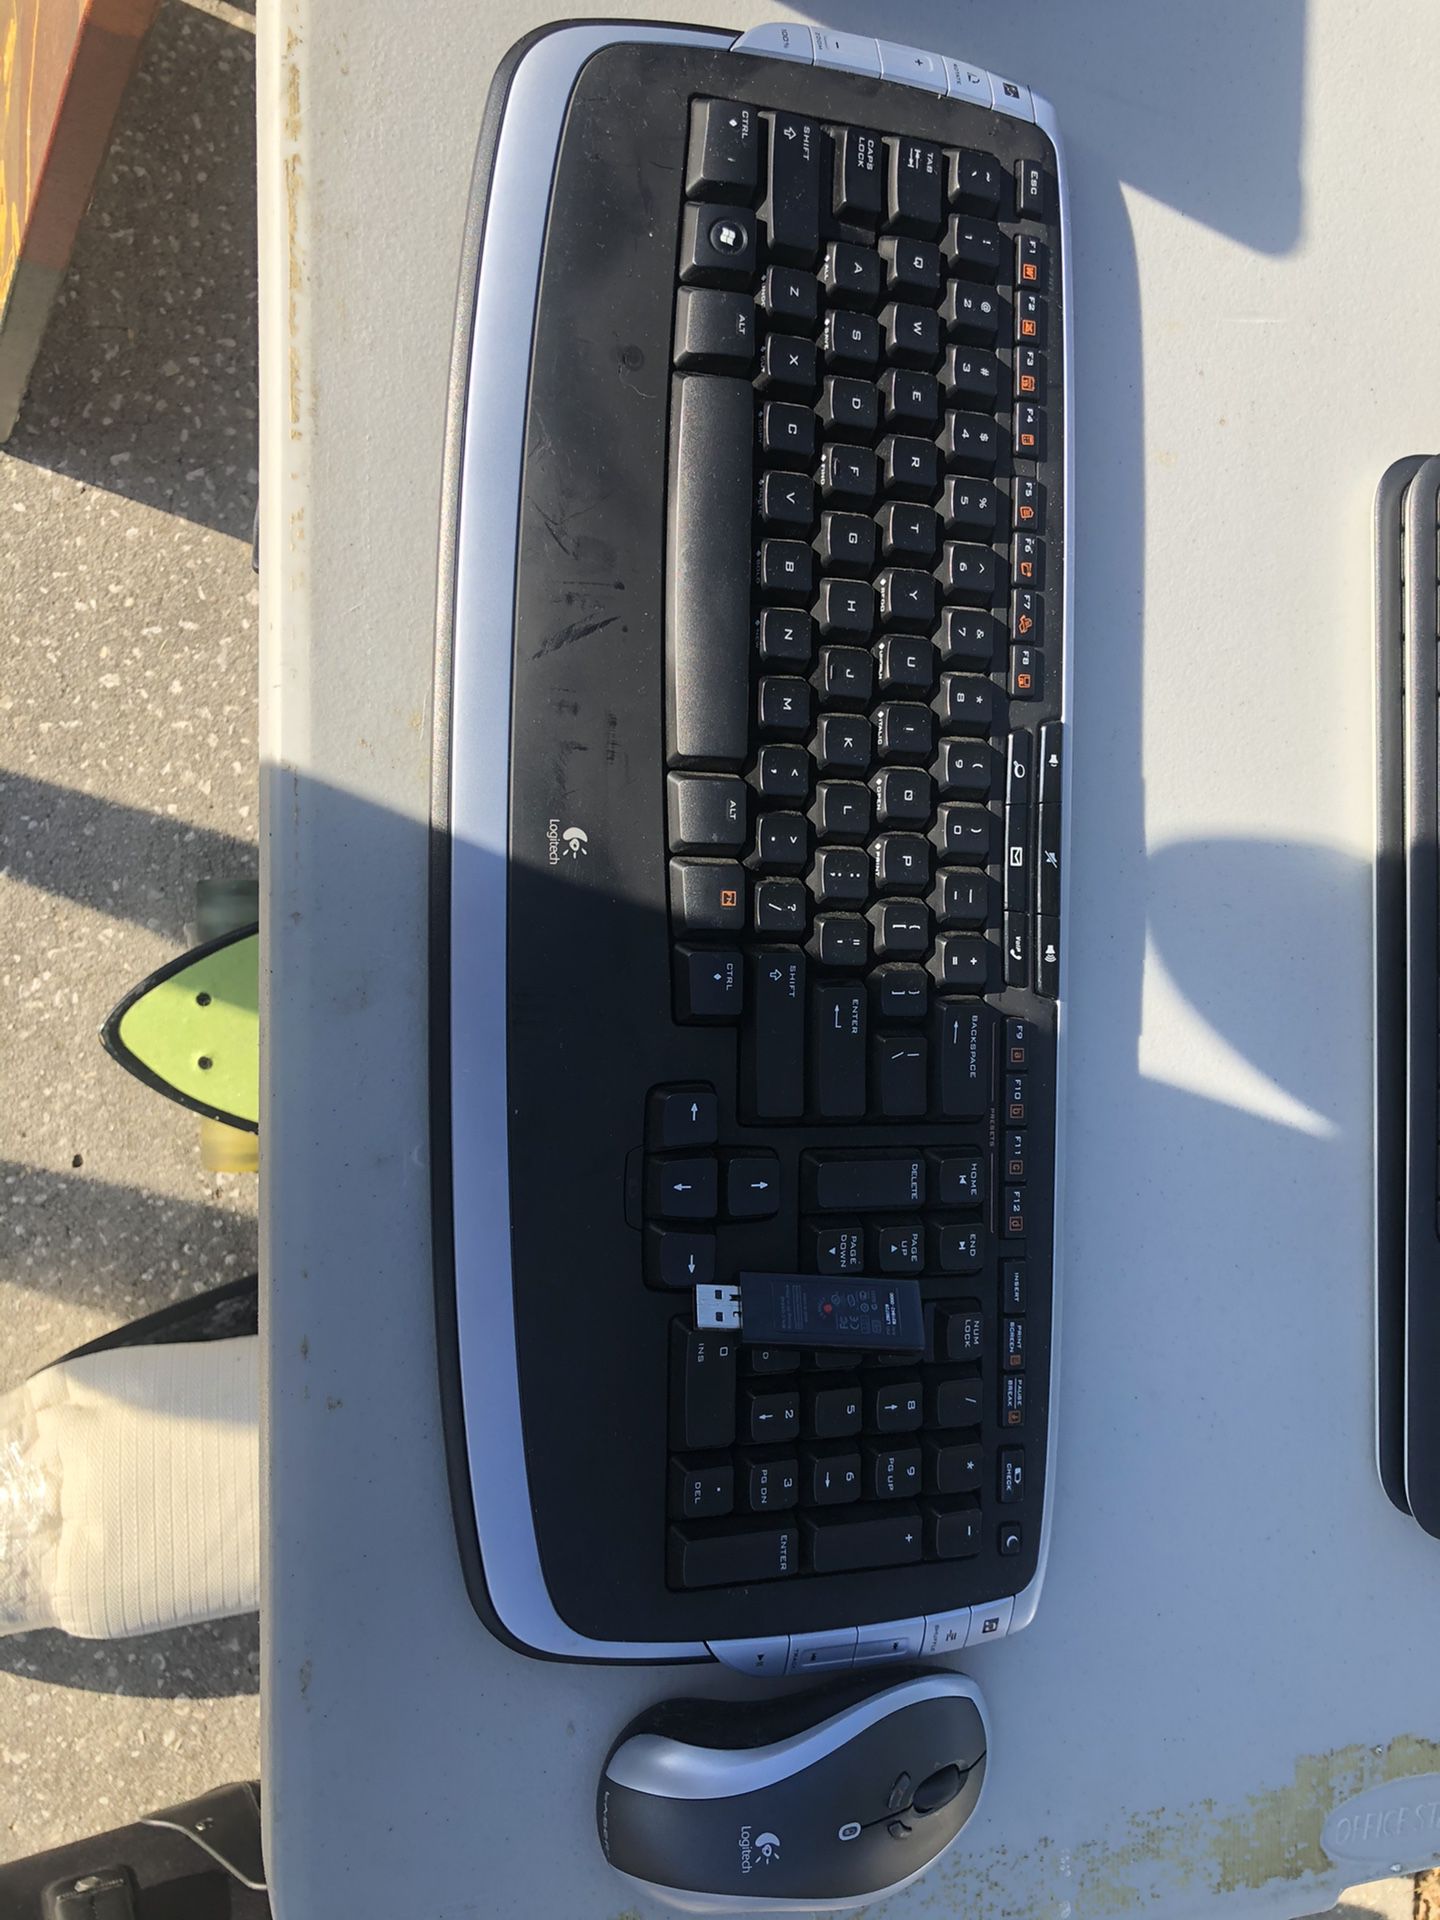 Logitech wireless keyboard and mouse combo